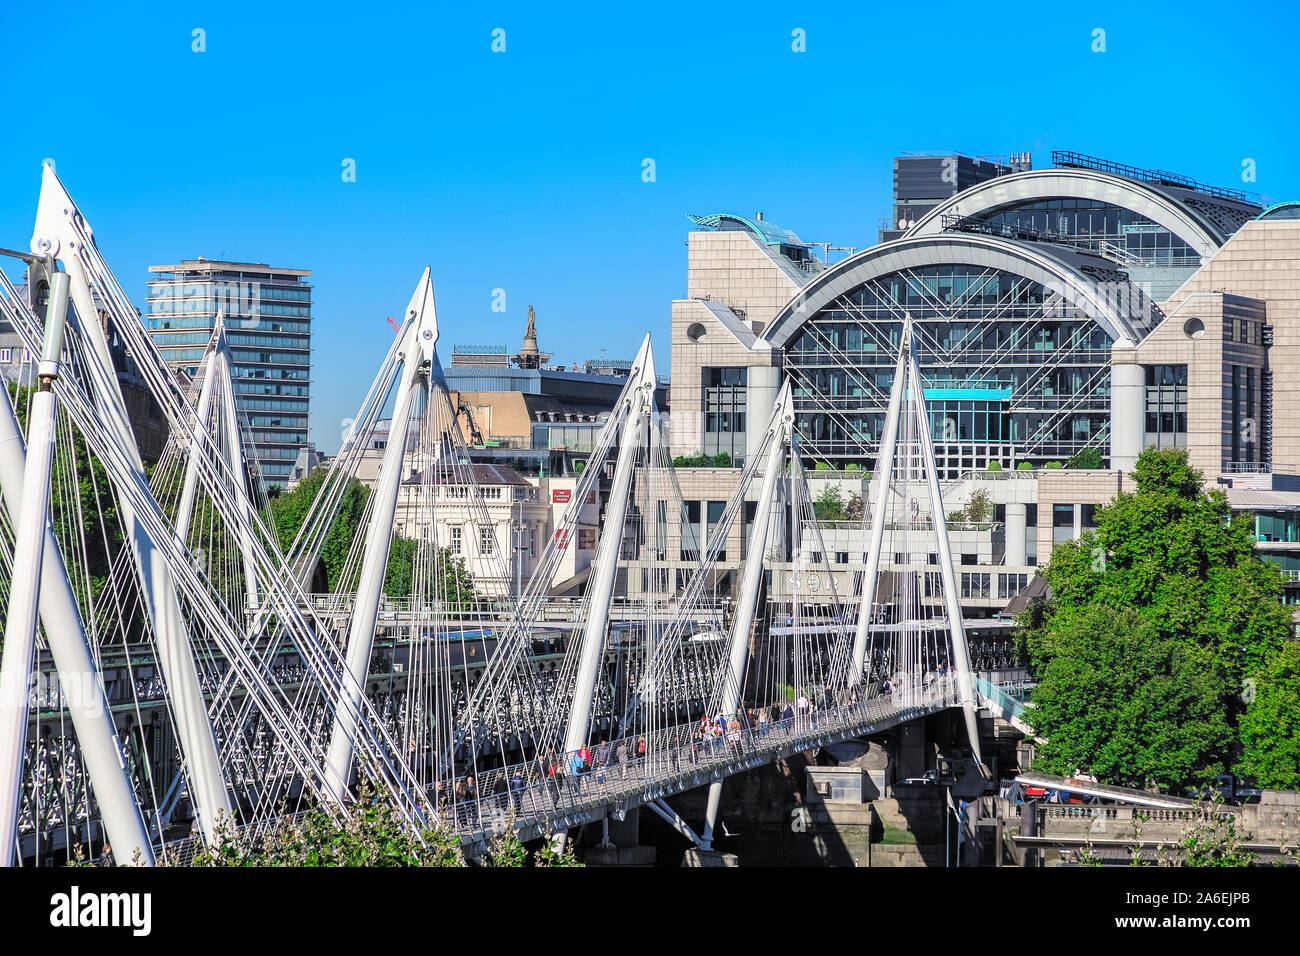 Il Golden Jubilee Bridges, una passerella pedonale, con la sponda del fiume di Charing Cross Station in background in Londra Foto Stock